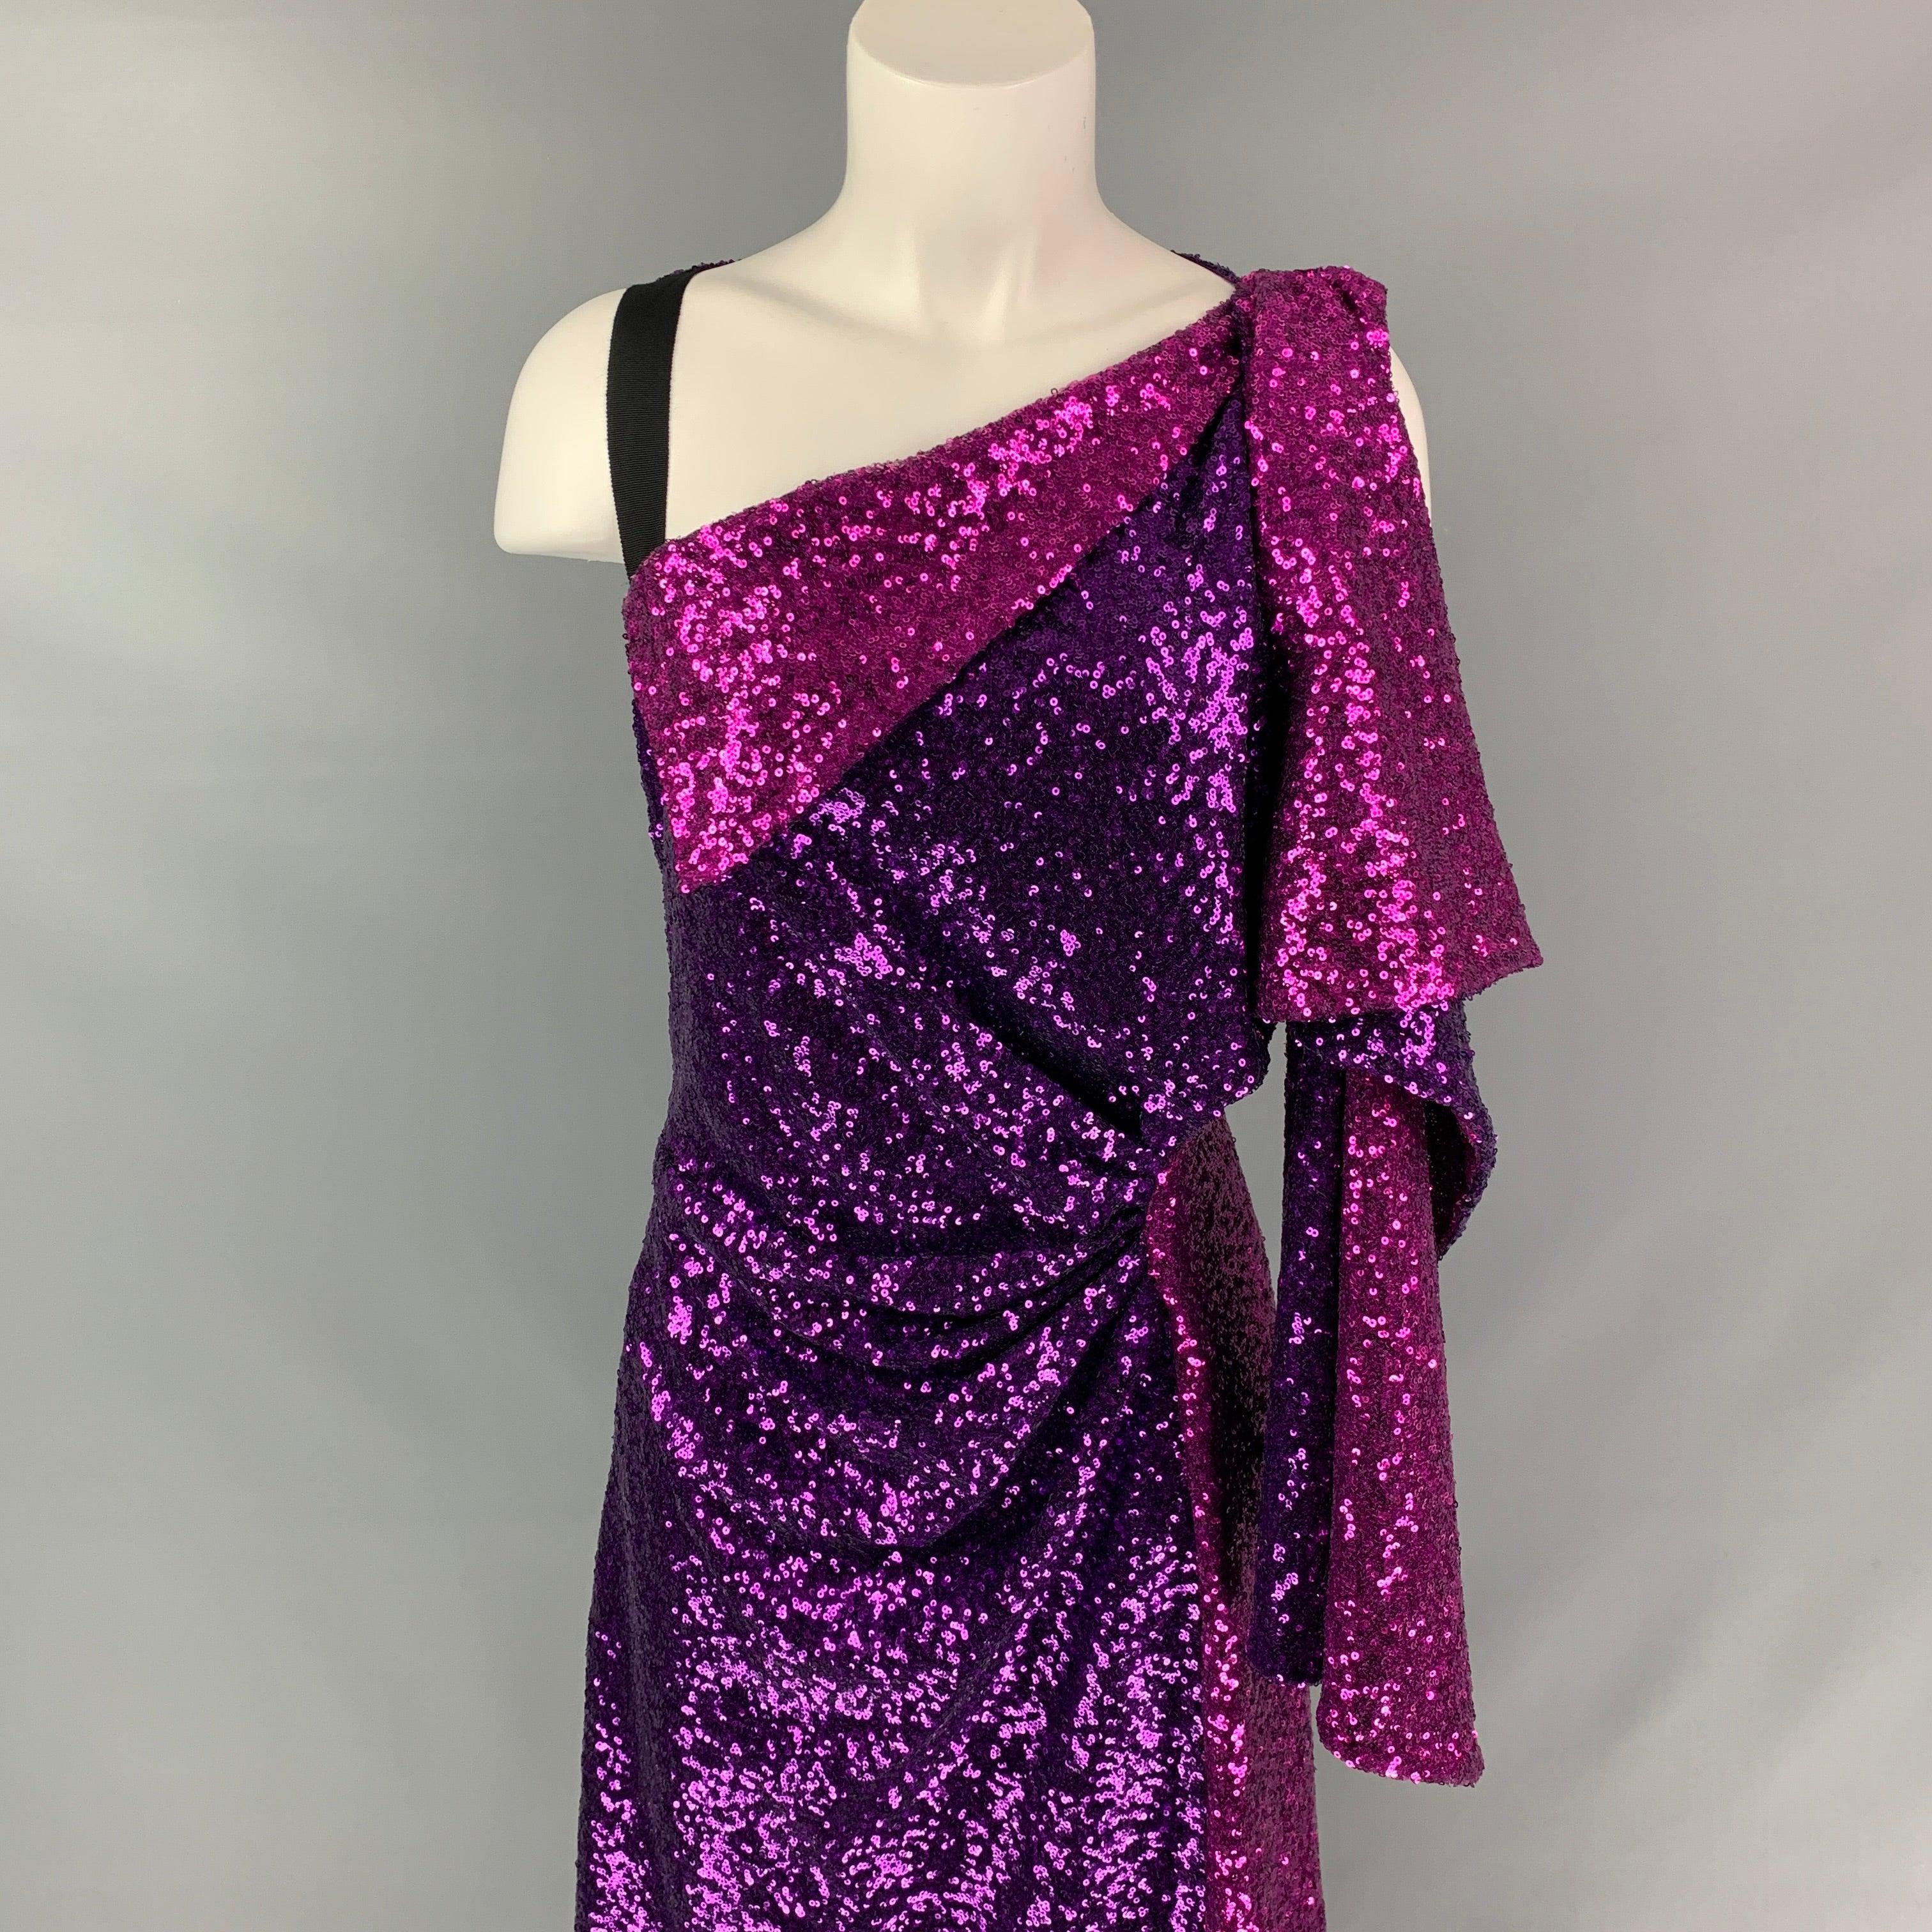 La robe PRABAL GURUNG est présentée dans un polyester pailleté violet et fuchsia et présente un style à une épaule, un design drapé, une fente sur le devant, une sangle élastique et une fermeture à glissière sur le côté. Fabriqué aux